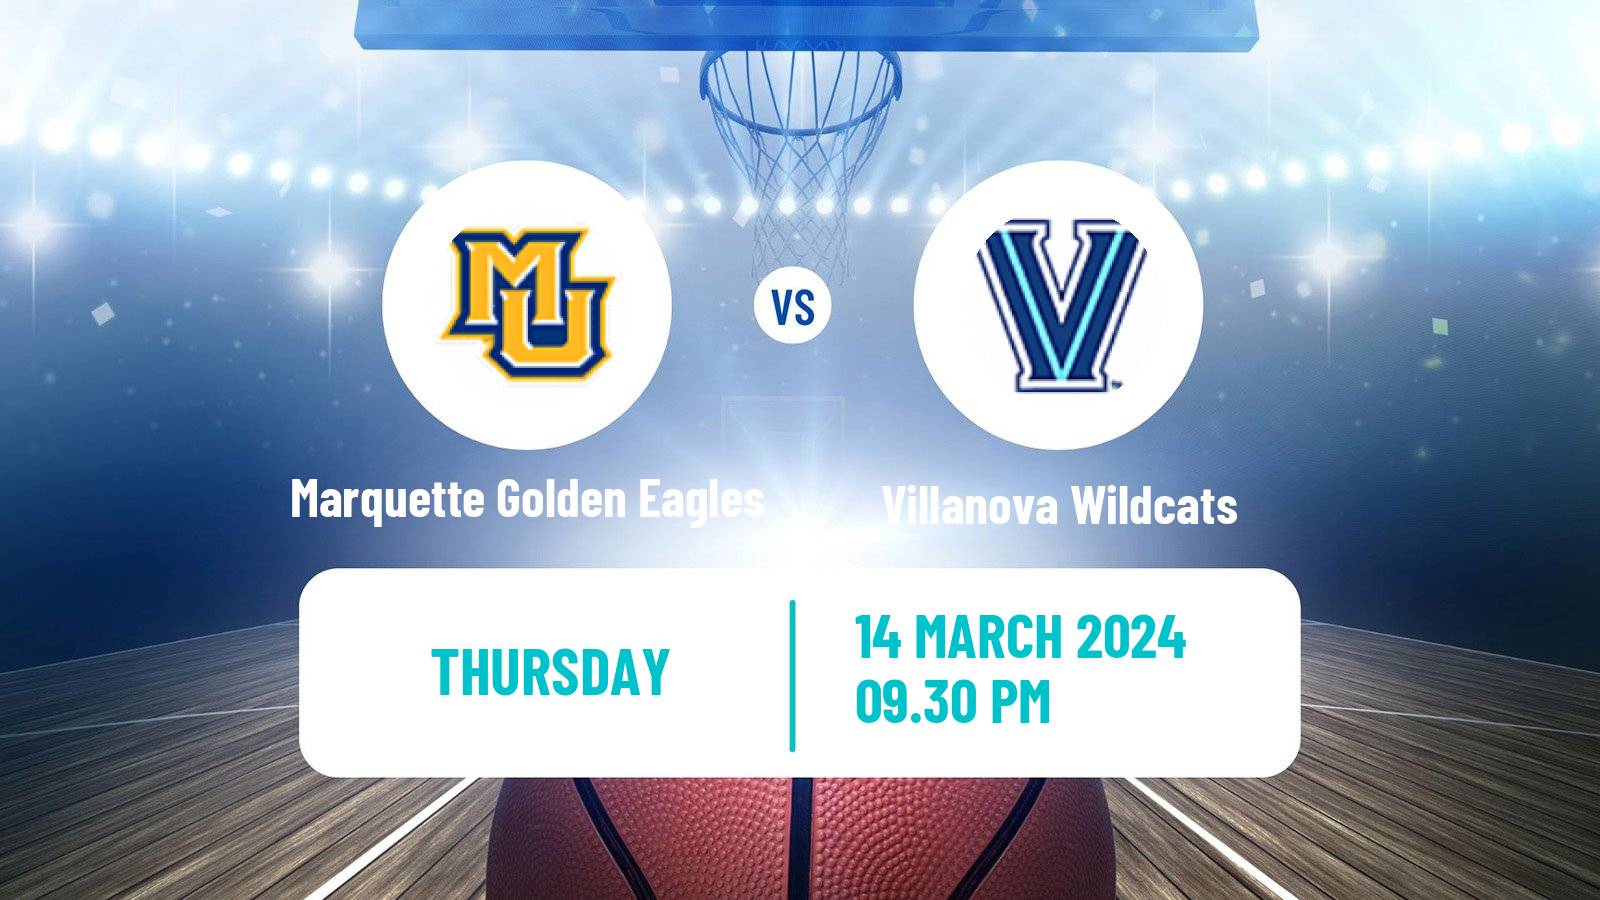 Basketball NCAA College Basketball Marquette Golden Eagles - Villanova Wildcats